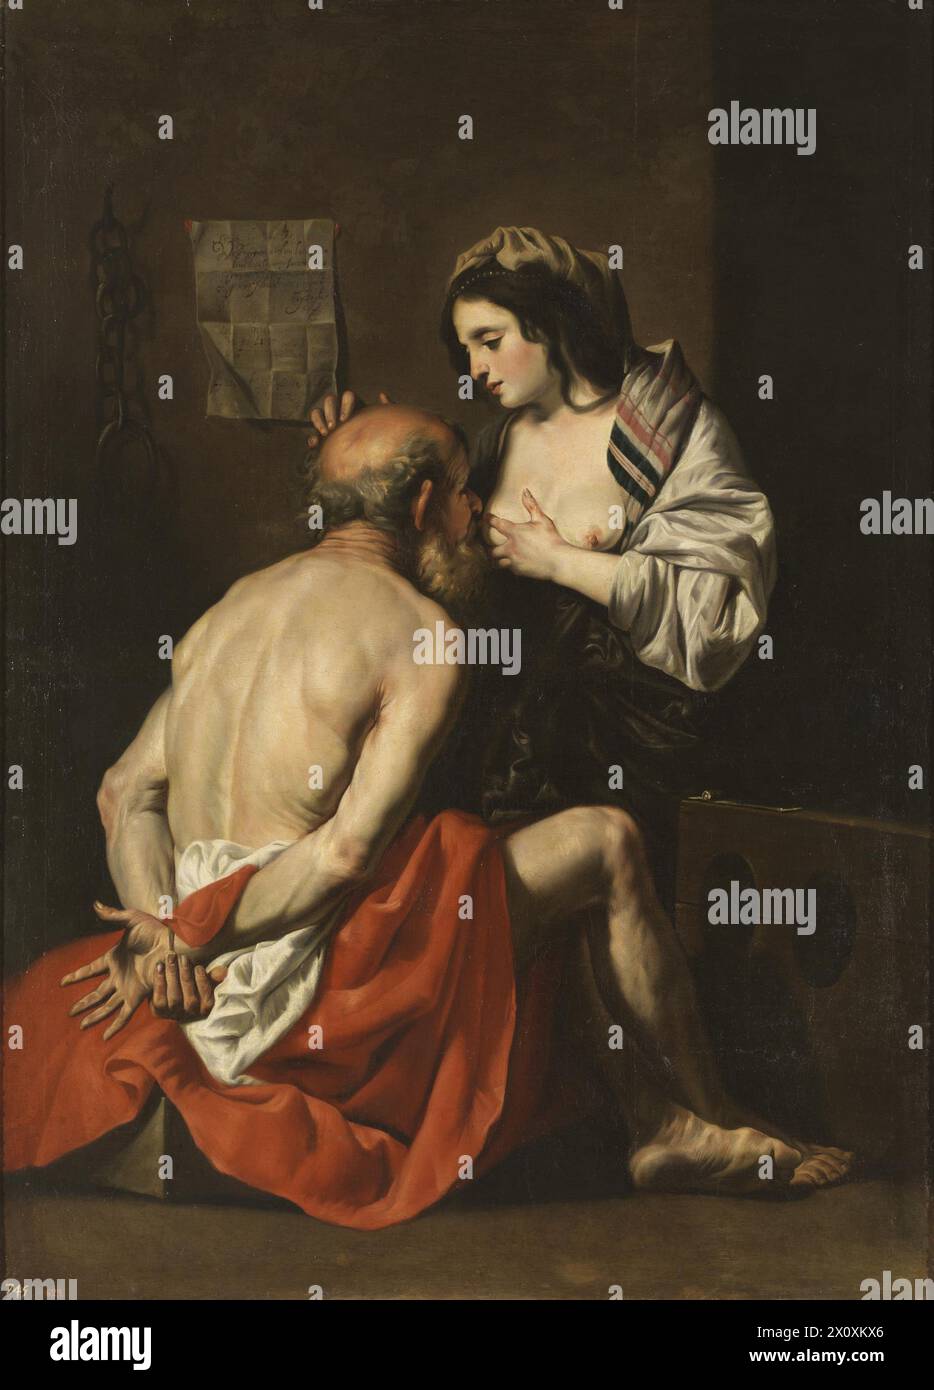 Caritas è un dipinto ad olio su tela del pittore fiammingo Gaspar de Crayer. Il dipinto si trova nella collezione del Museo del Prado di Madrid - Carità Romana Foto Stock